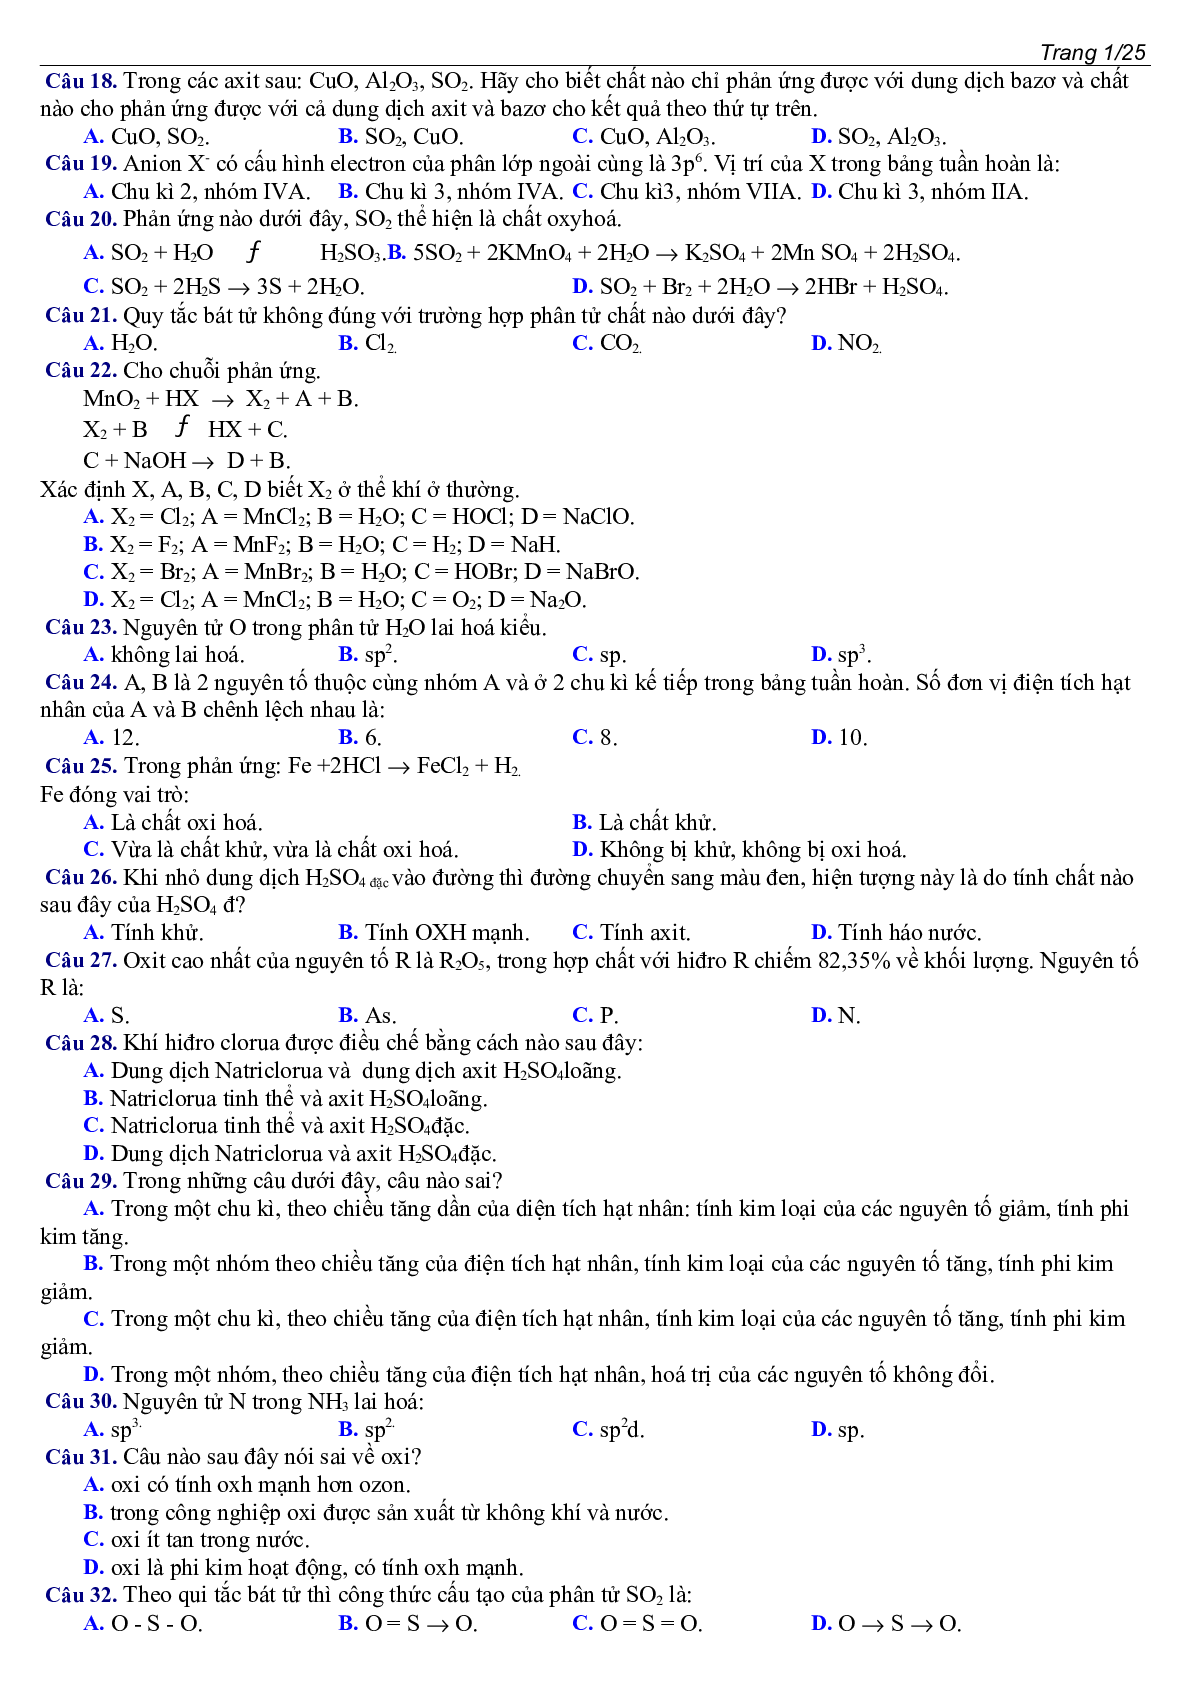 400 câu Trắc nghiệm Tổng hợp Hóa học lớp 10 cực hay (trang 2)